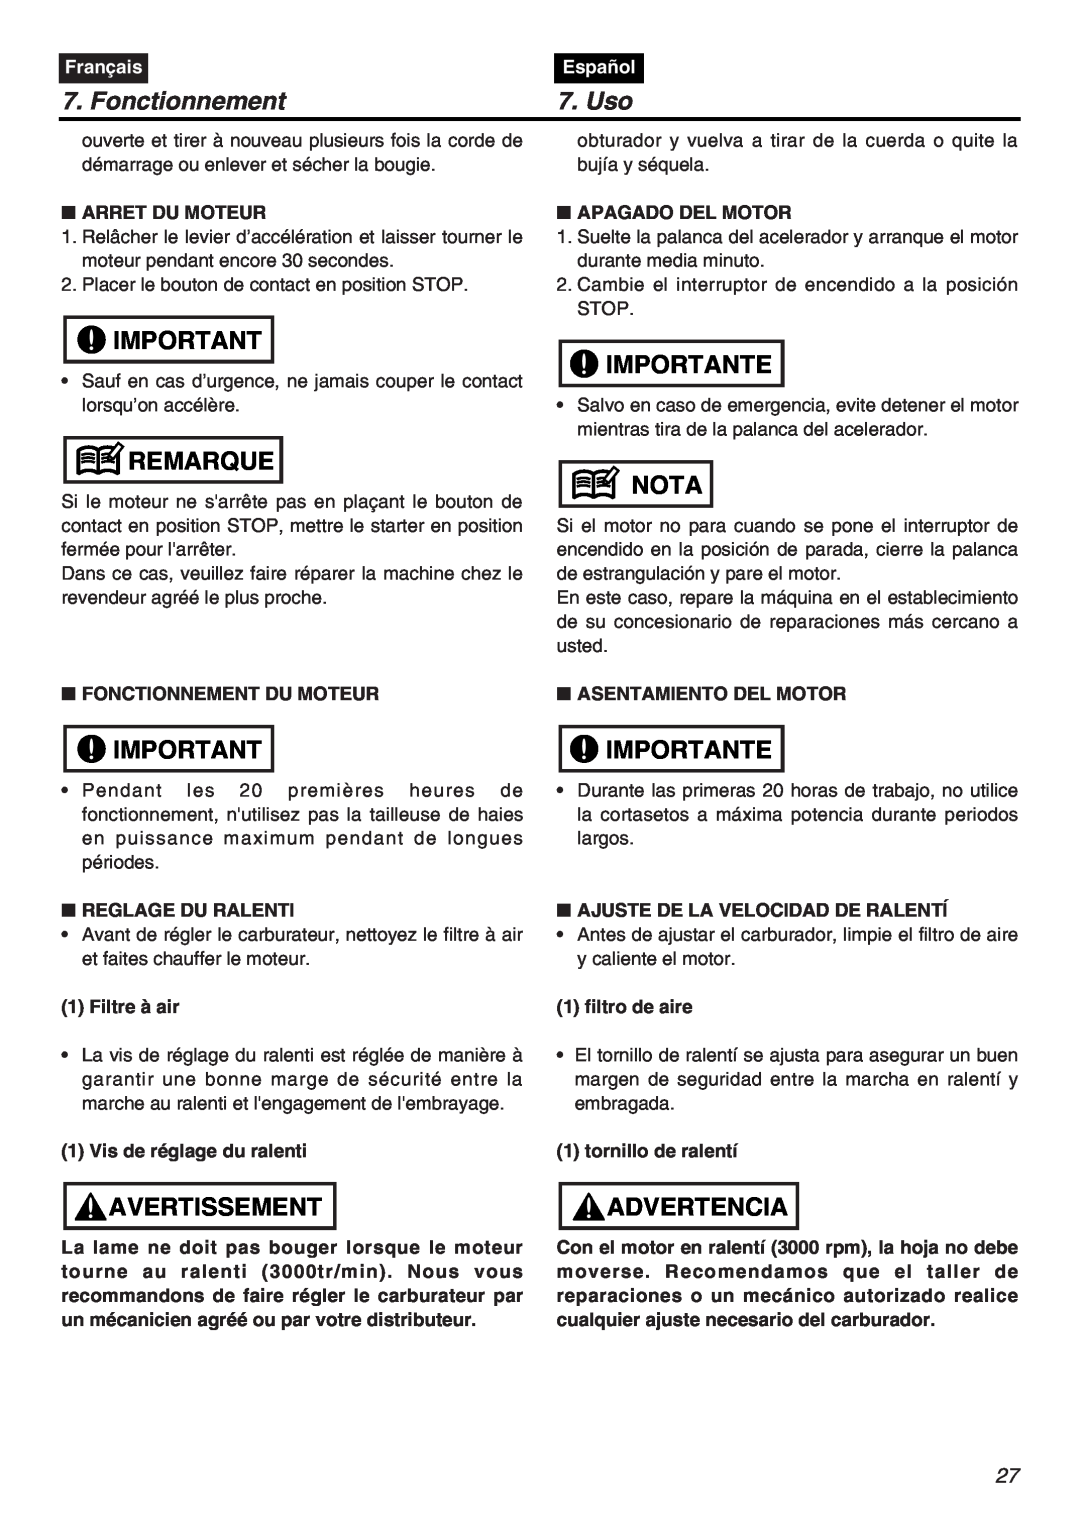 Zenoah HTZ2401L manual Fonctionnement, Uso, Remarque, Avertissement, Importante, Nota, Advertencia, Français, Español 